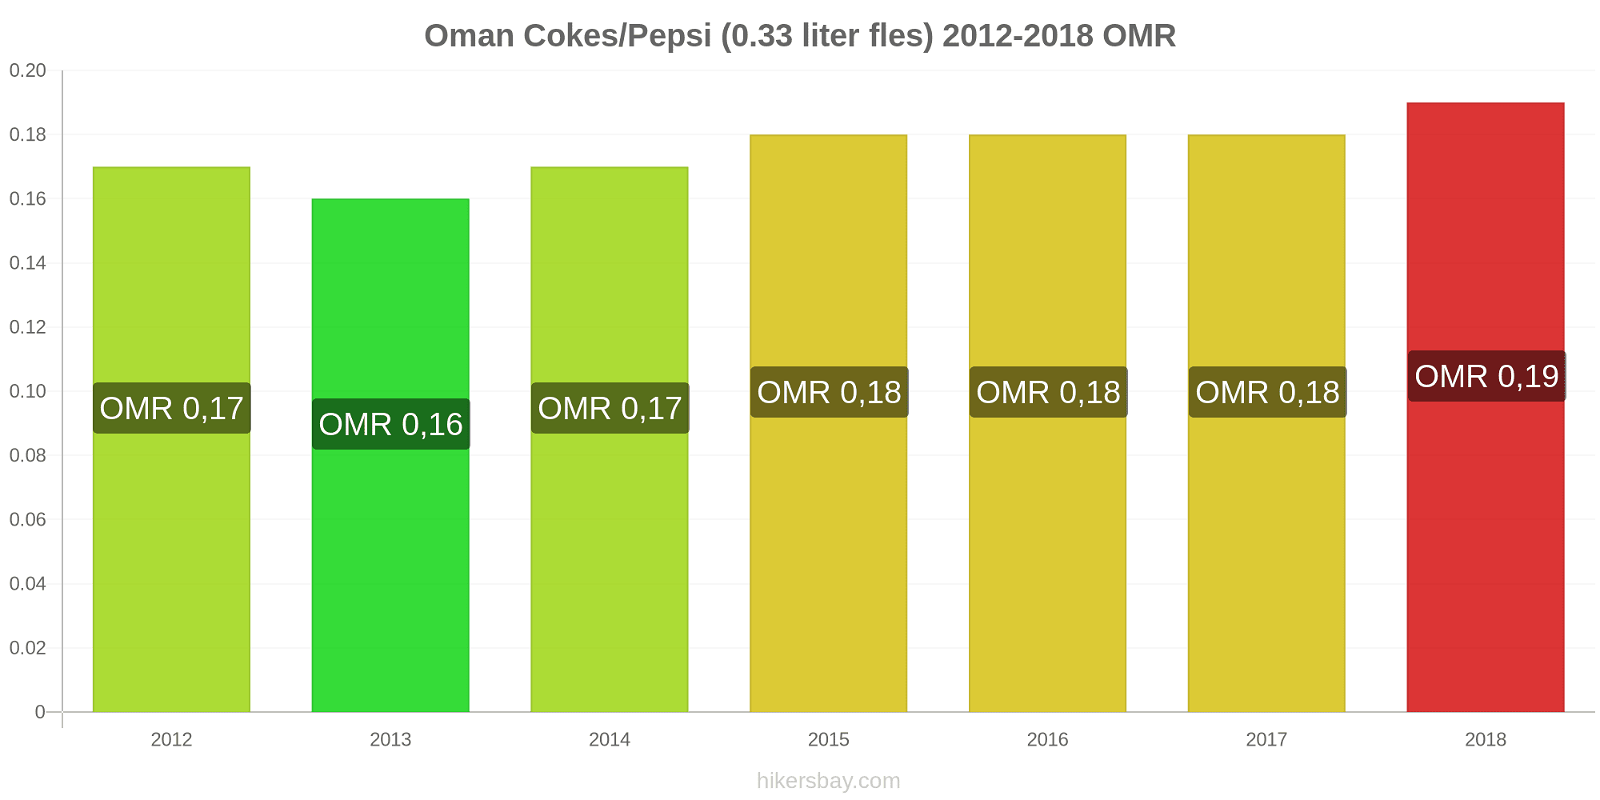 Oman prijswijzigingen Cokes/Pepsi (0,33 literfles) hikersbay.com